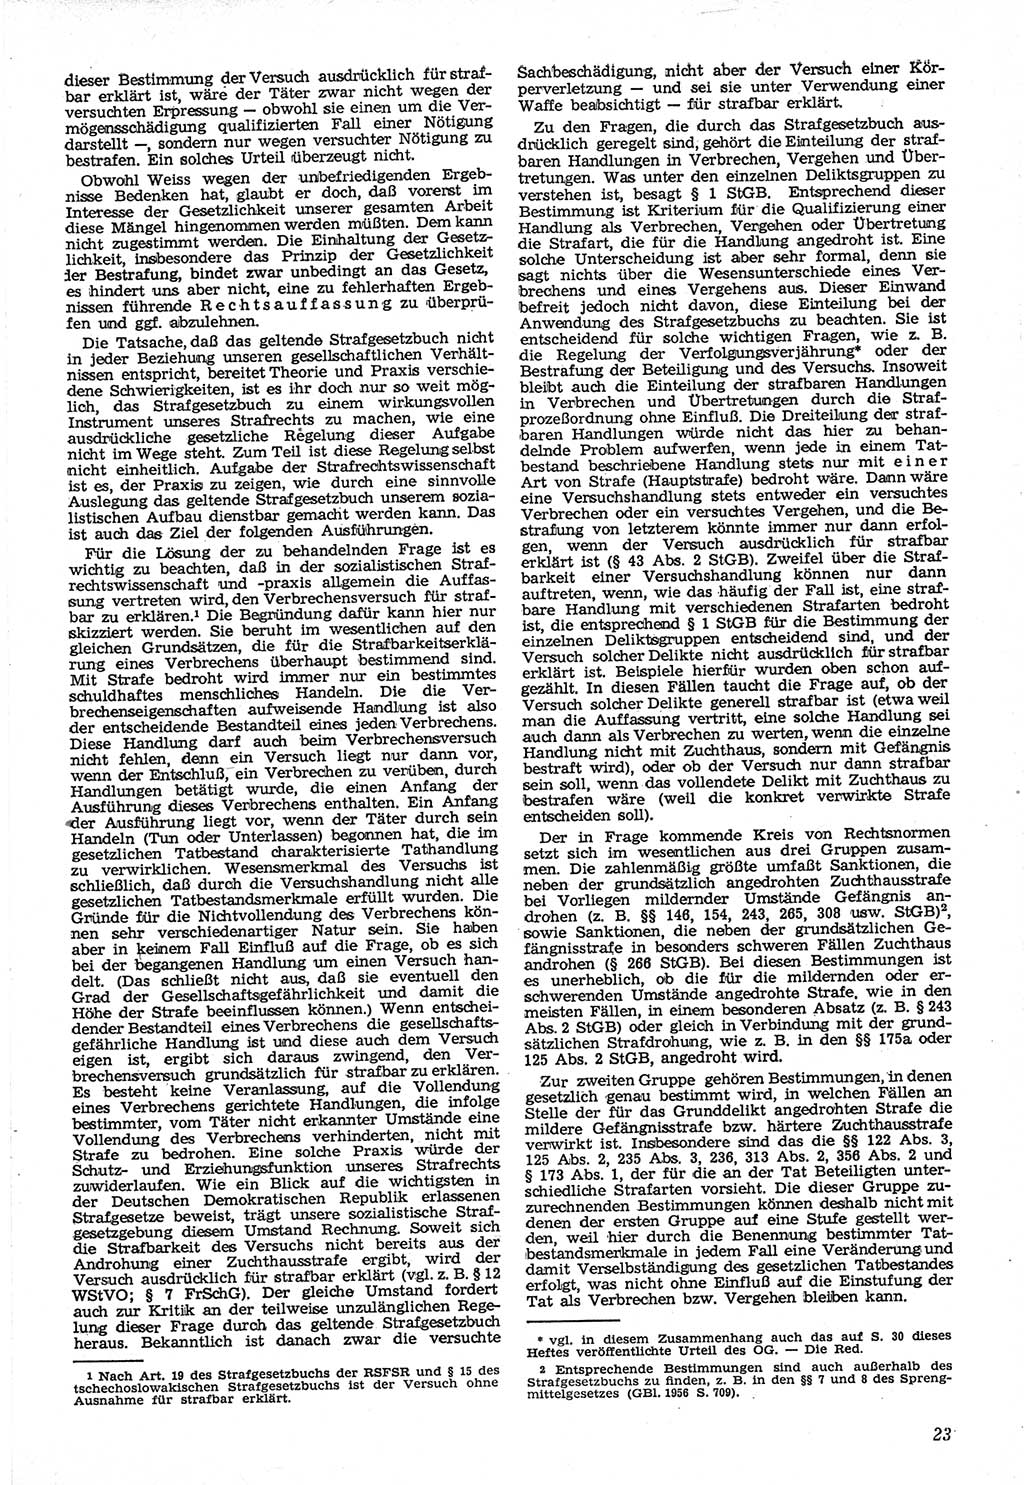 Neue Justiz (NJ), Zeitschrift für Recht und Rechtswissenschaft [Deutsche Demokratische Republik (DDR)], 12. Jahrgang 1958, Seite 23 (NJ DDR 1958, S. 23)